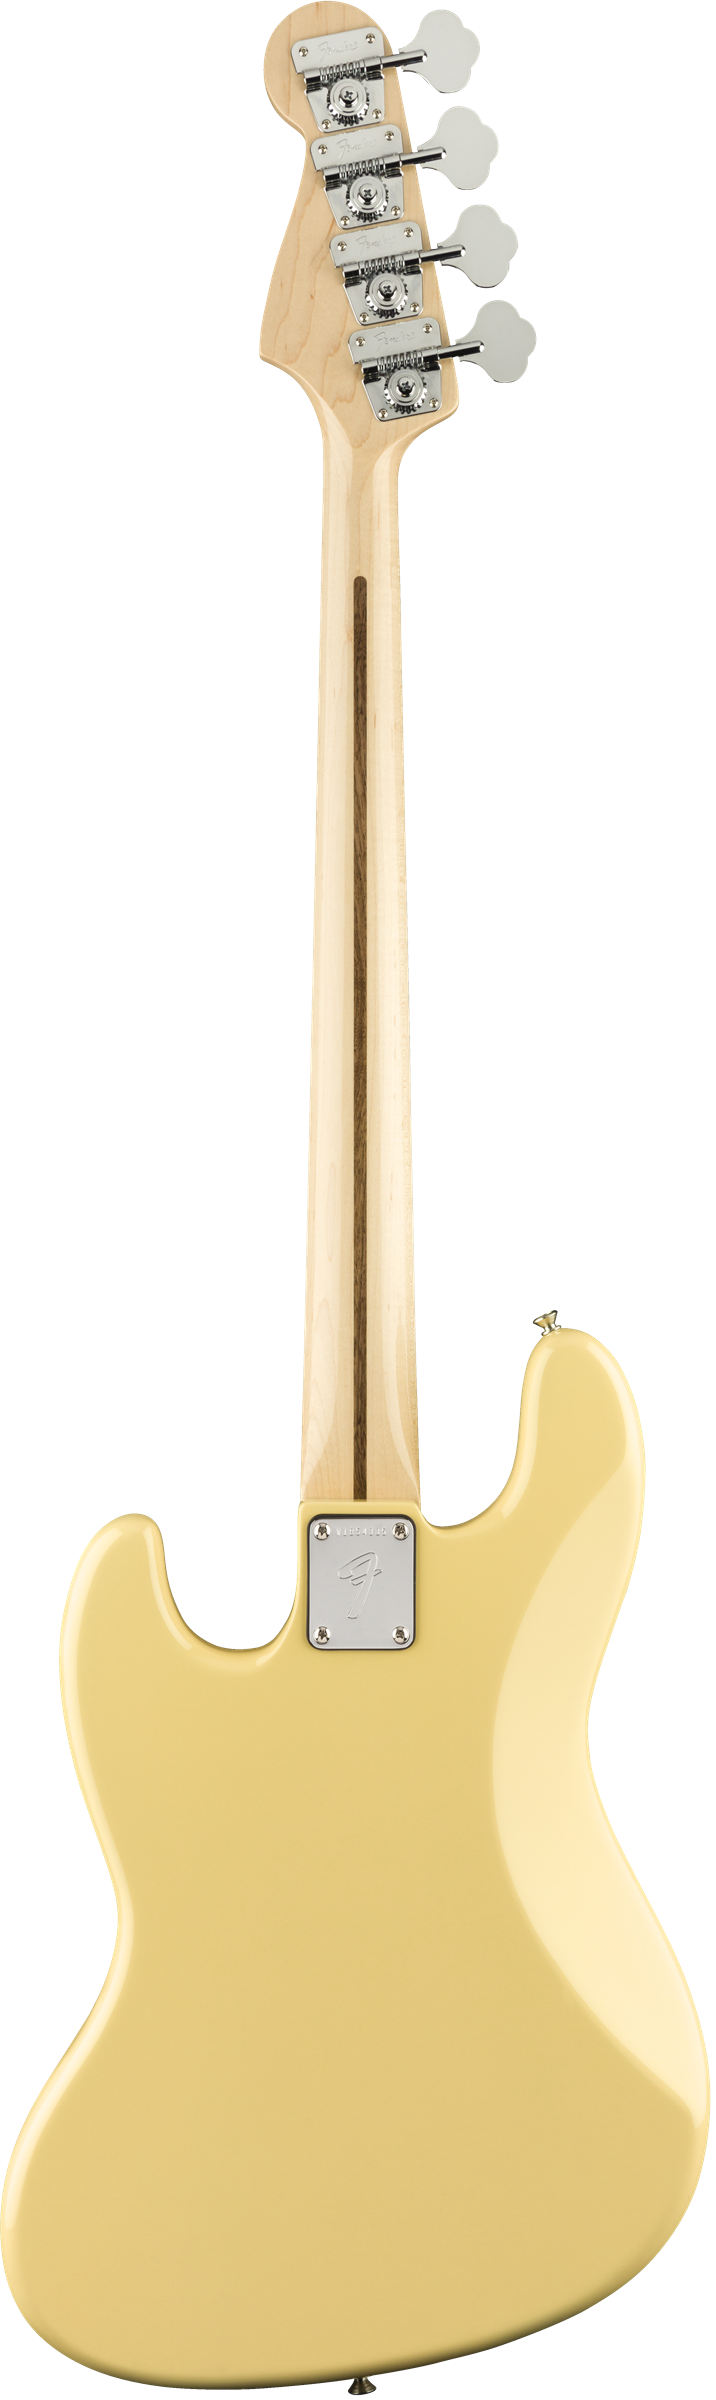 Fender American Original 70's Jazz Bass Vintage White Maple Neck